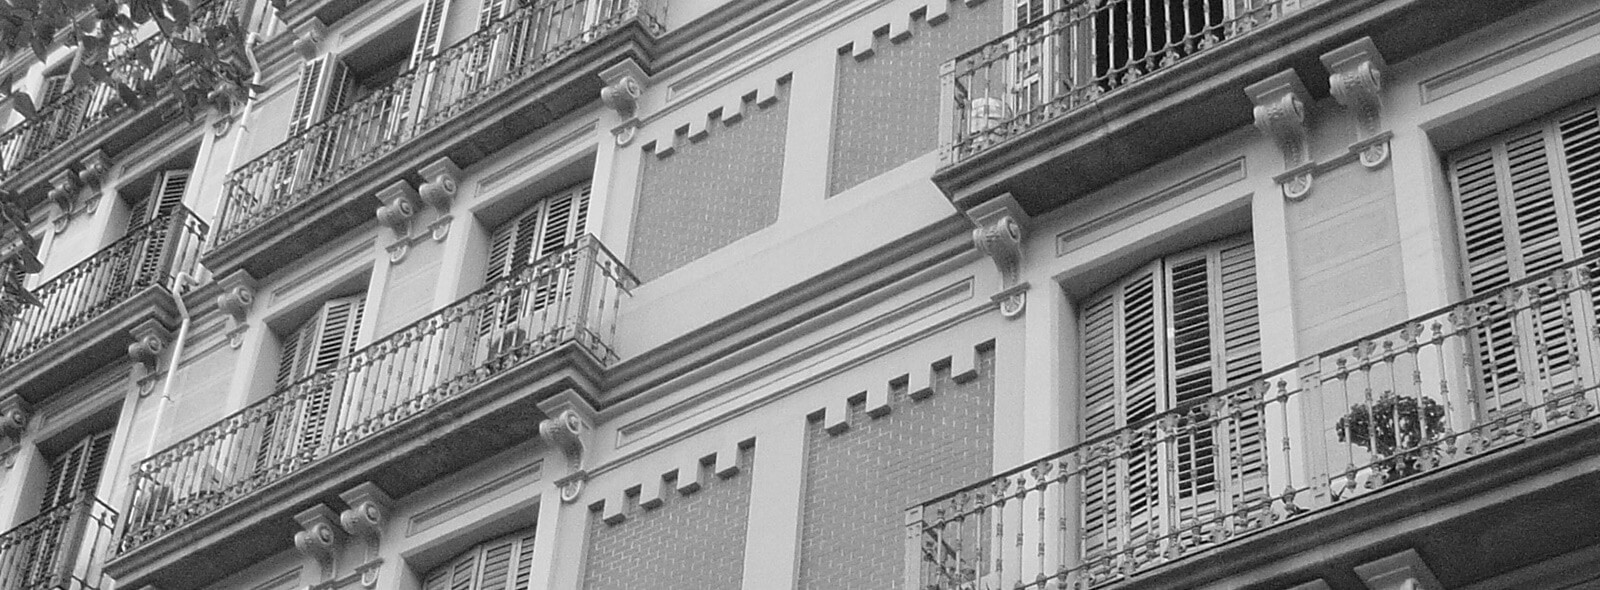 Renta Corporación, sale of buildings in Barcelona